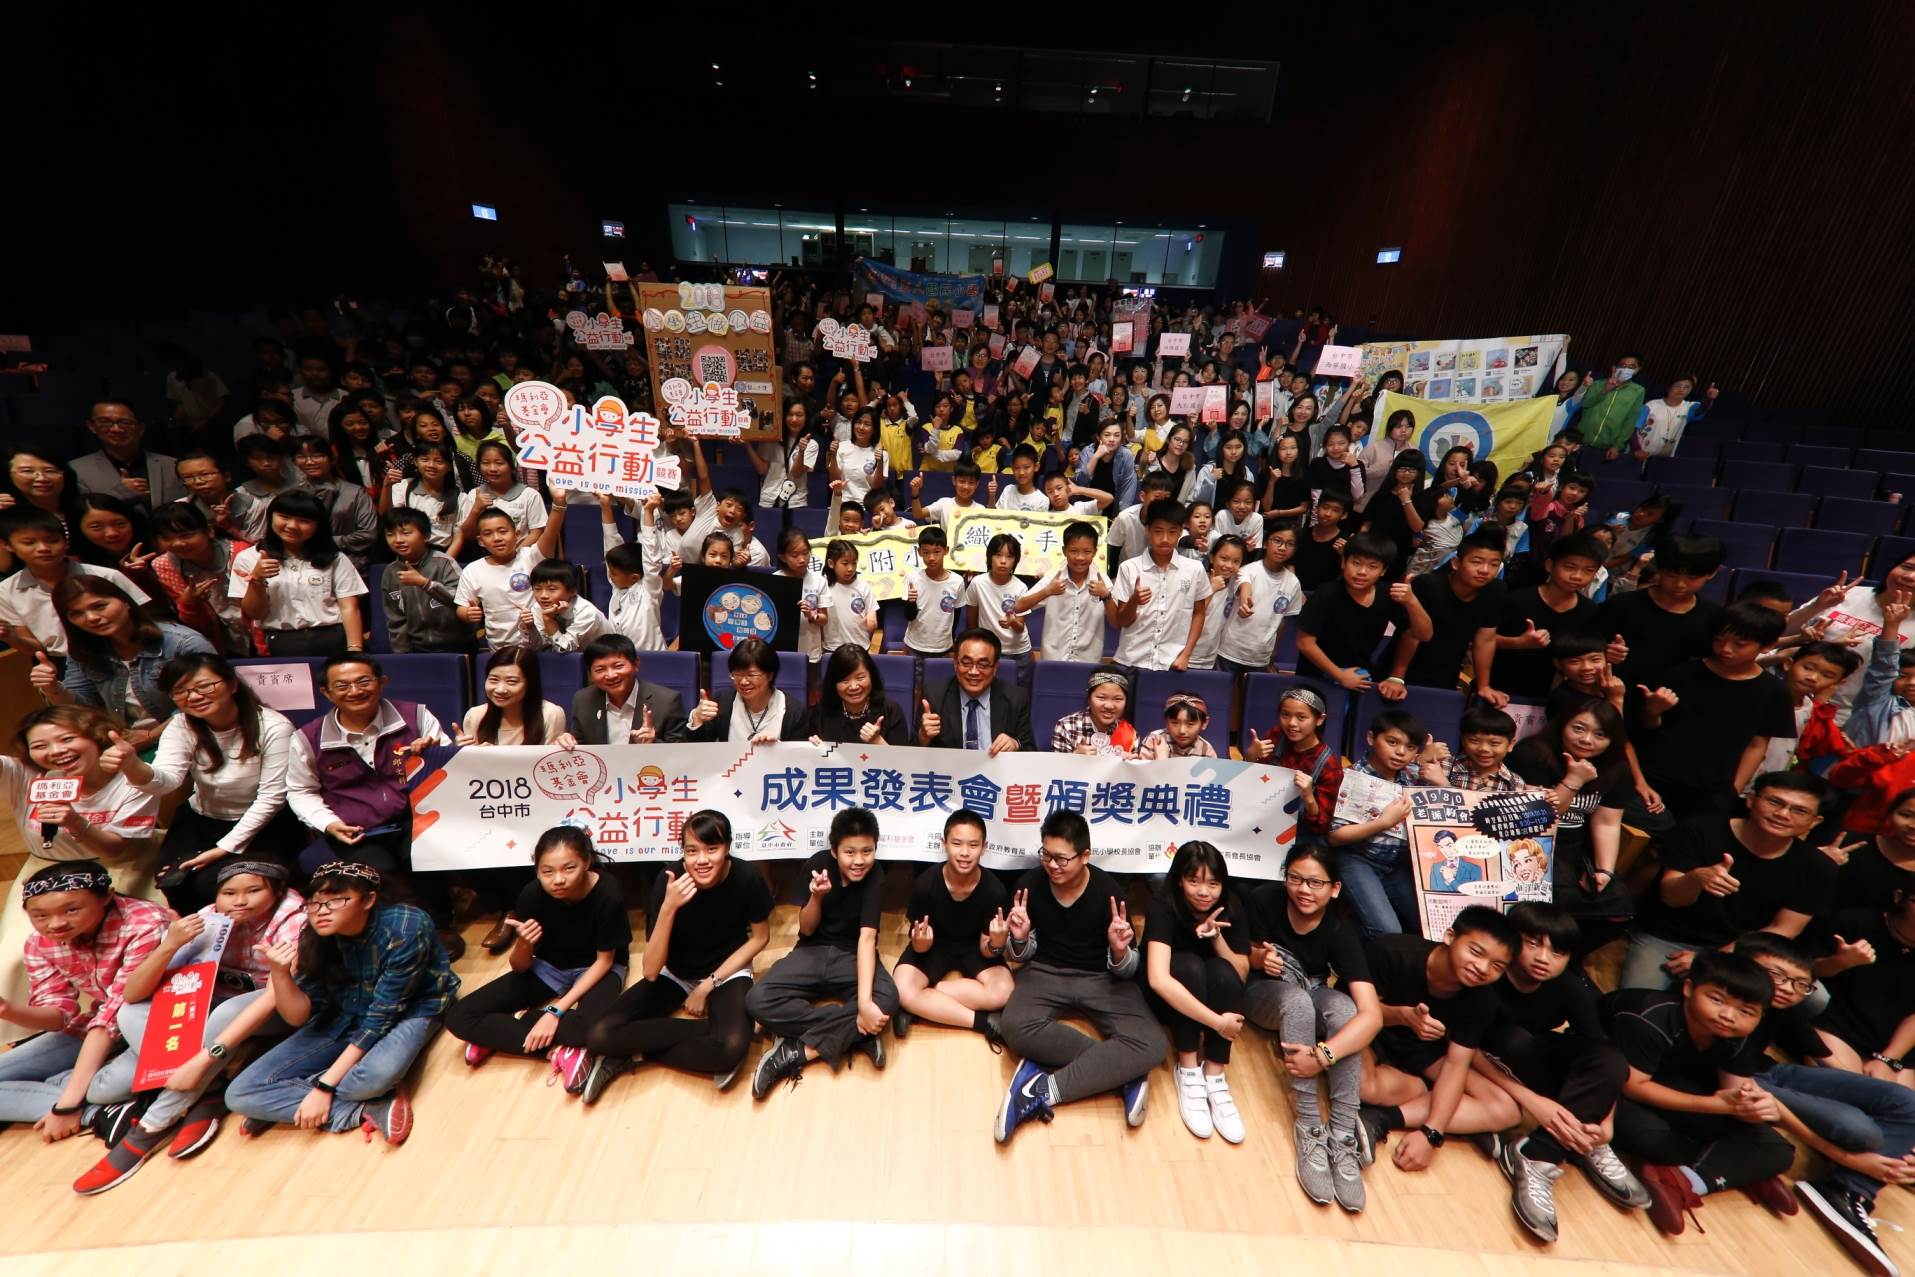 2018臺中市小学生公益行动成果发表会暨颁奖典礼合影。